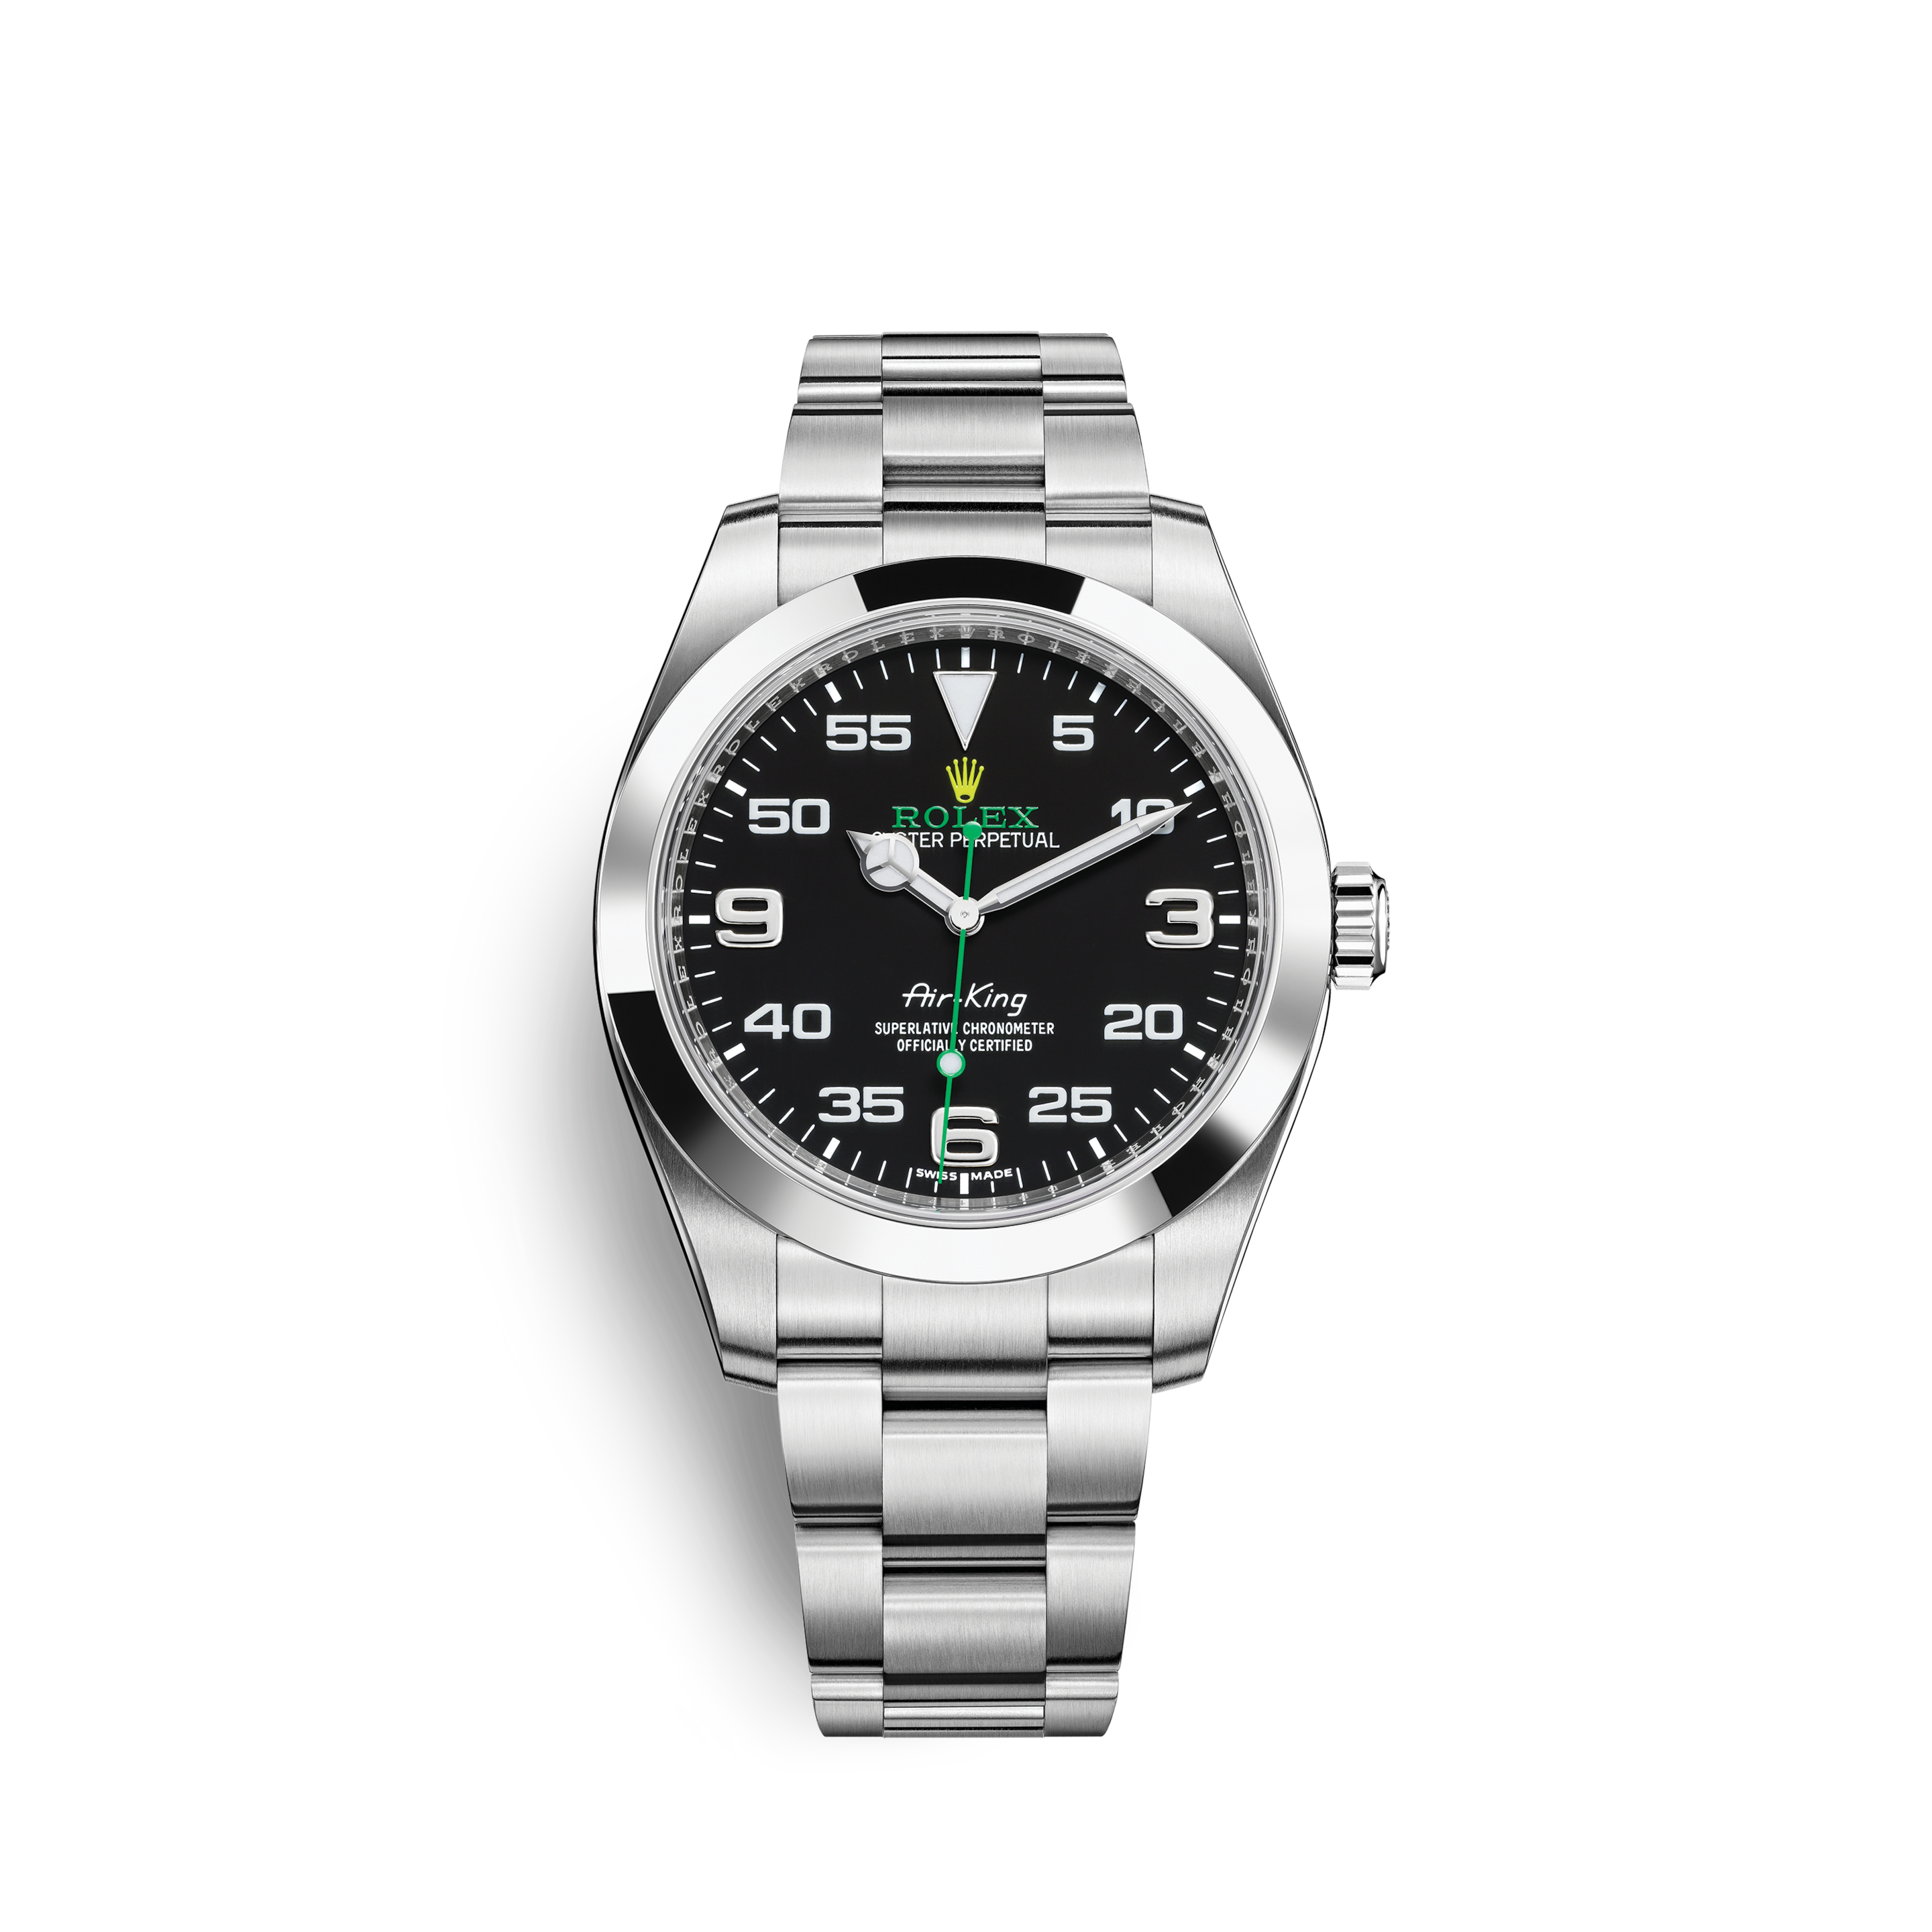 Rolex Datejust Men's Stainless Steel Watch 116234 Jubilee Diamond Dial